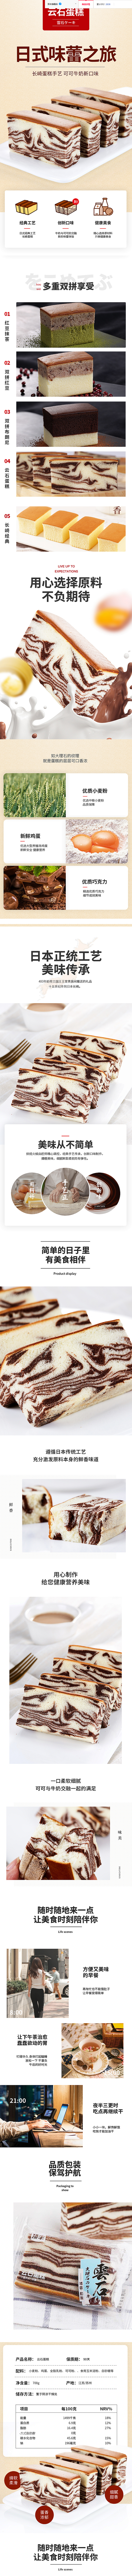 顶丰 长崎蛋糕早餐点心云石蛋糕手撕面包网...